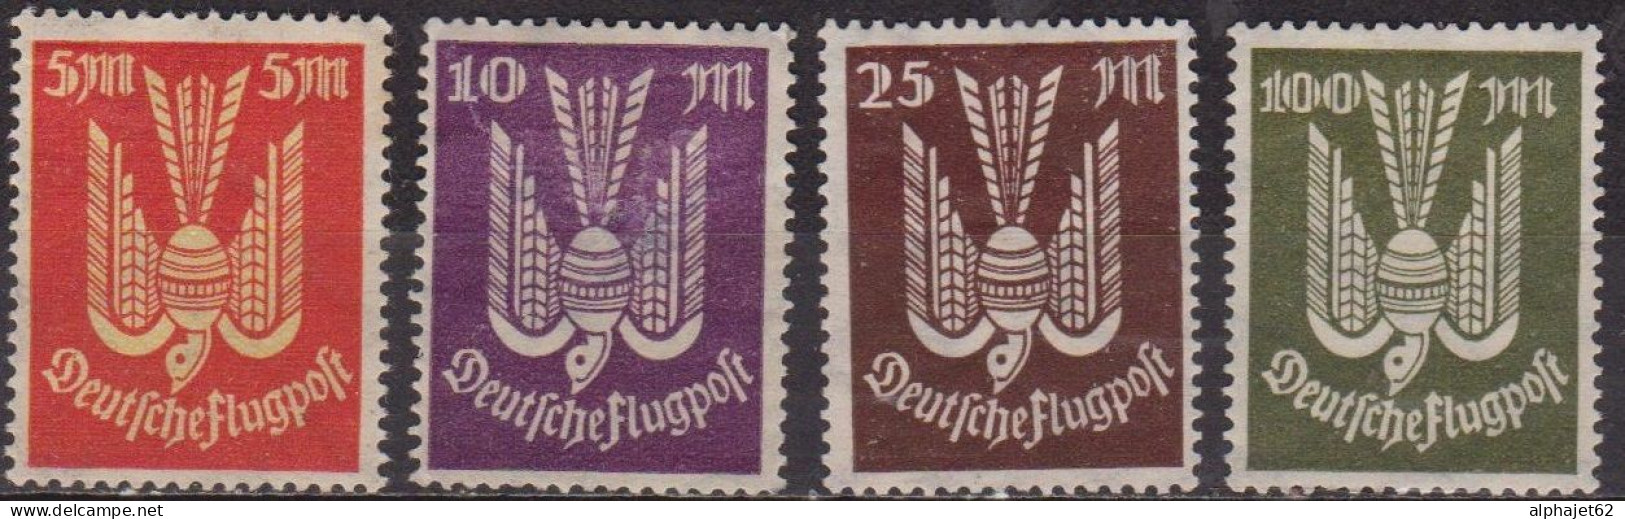 Oiseau - ALLEMAGNE - Deutsche Flugpost - Poste Aérienne - N° 15-16-17-18 * - 1922 - Luchtpost & Zeppelin